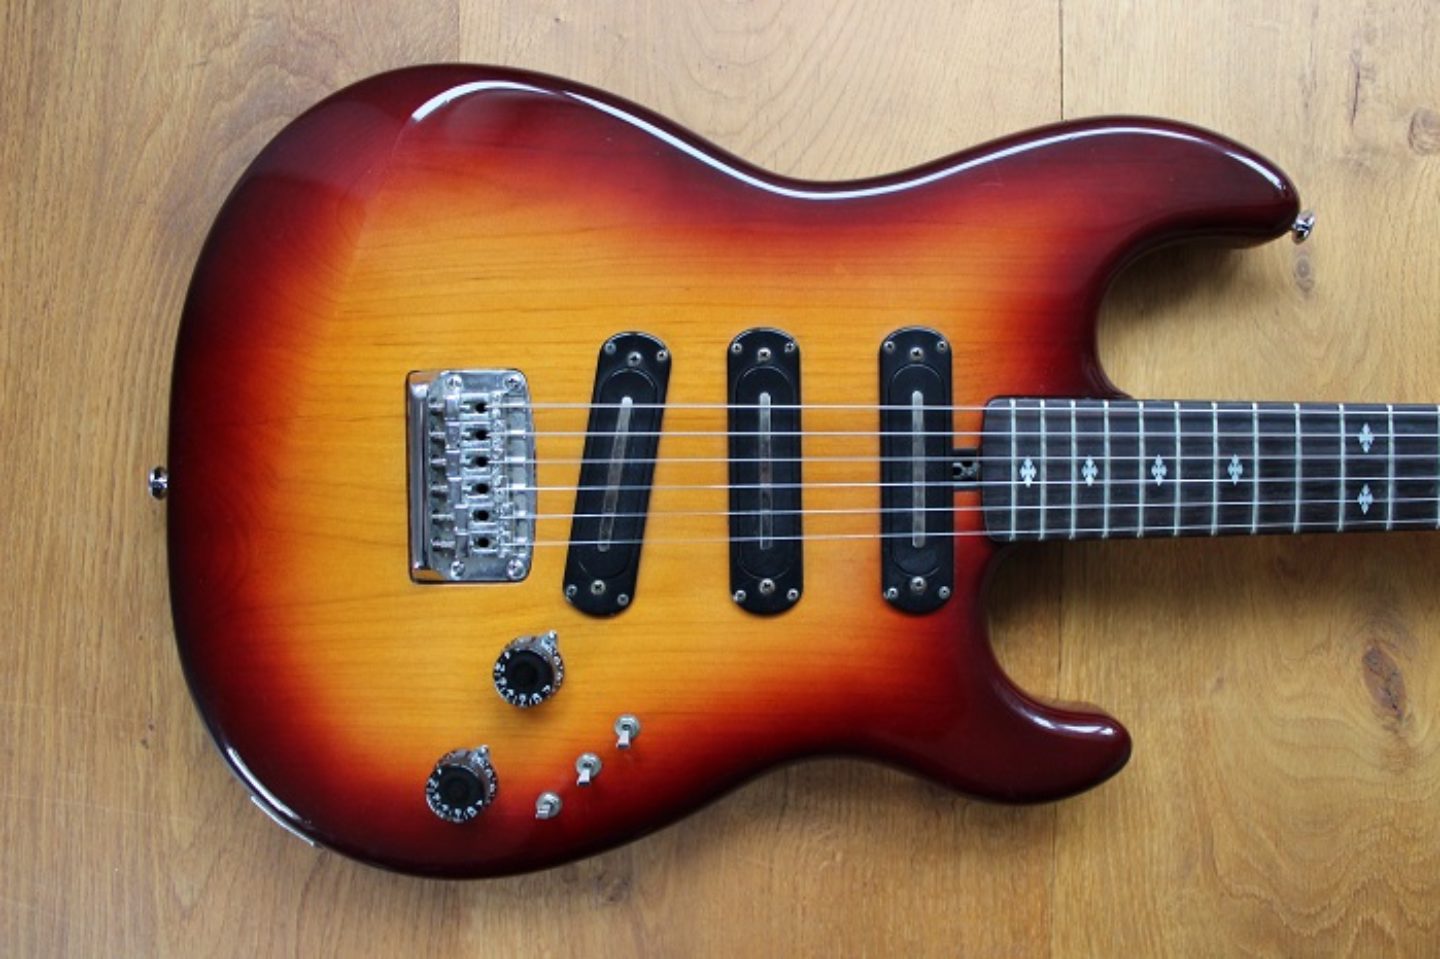 SC 1000 | Yamaha Guitars